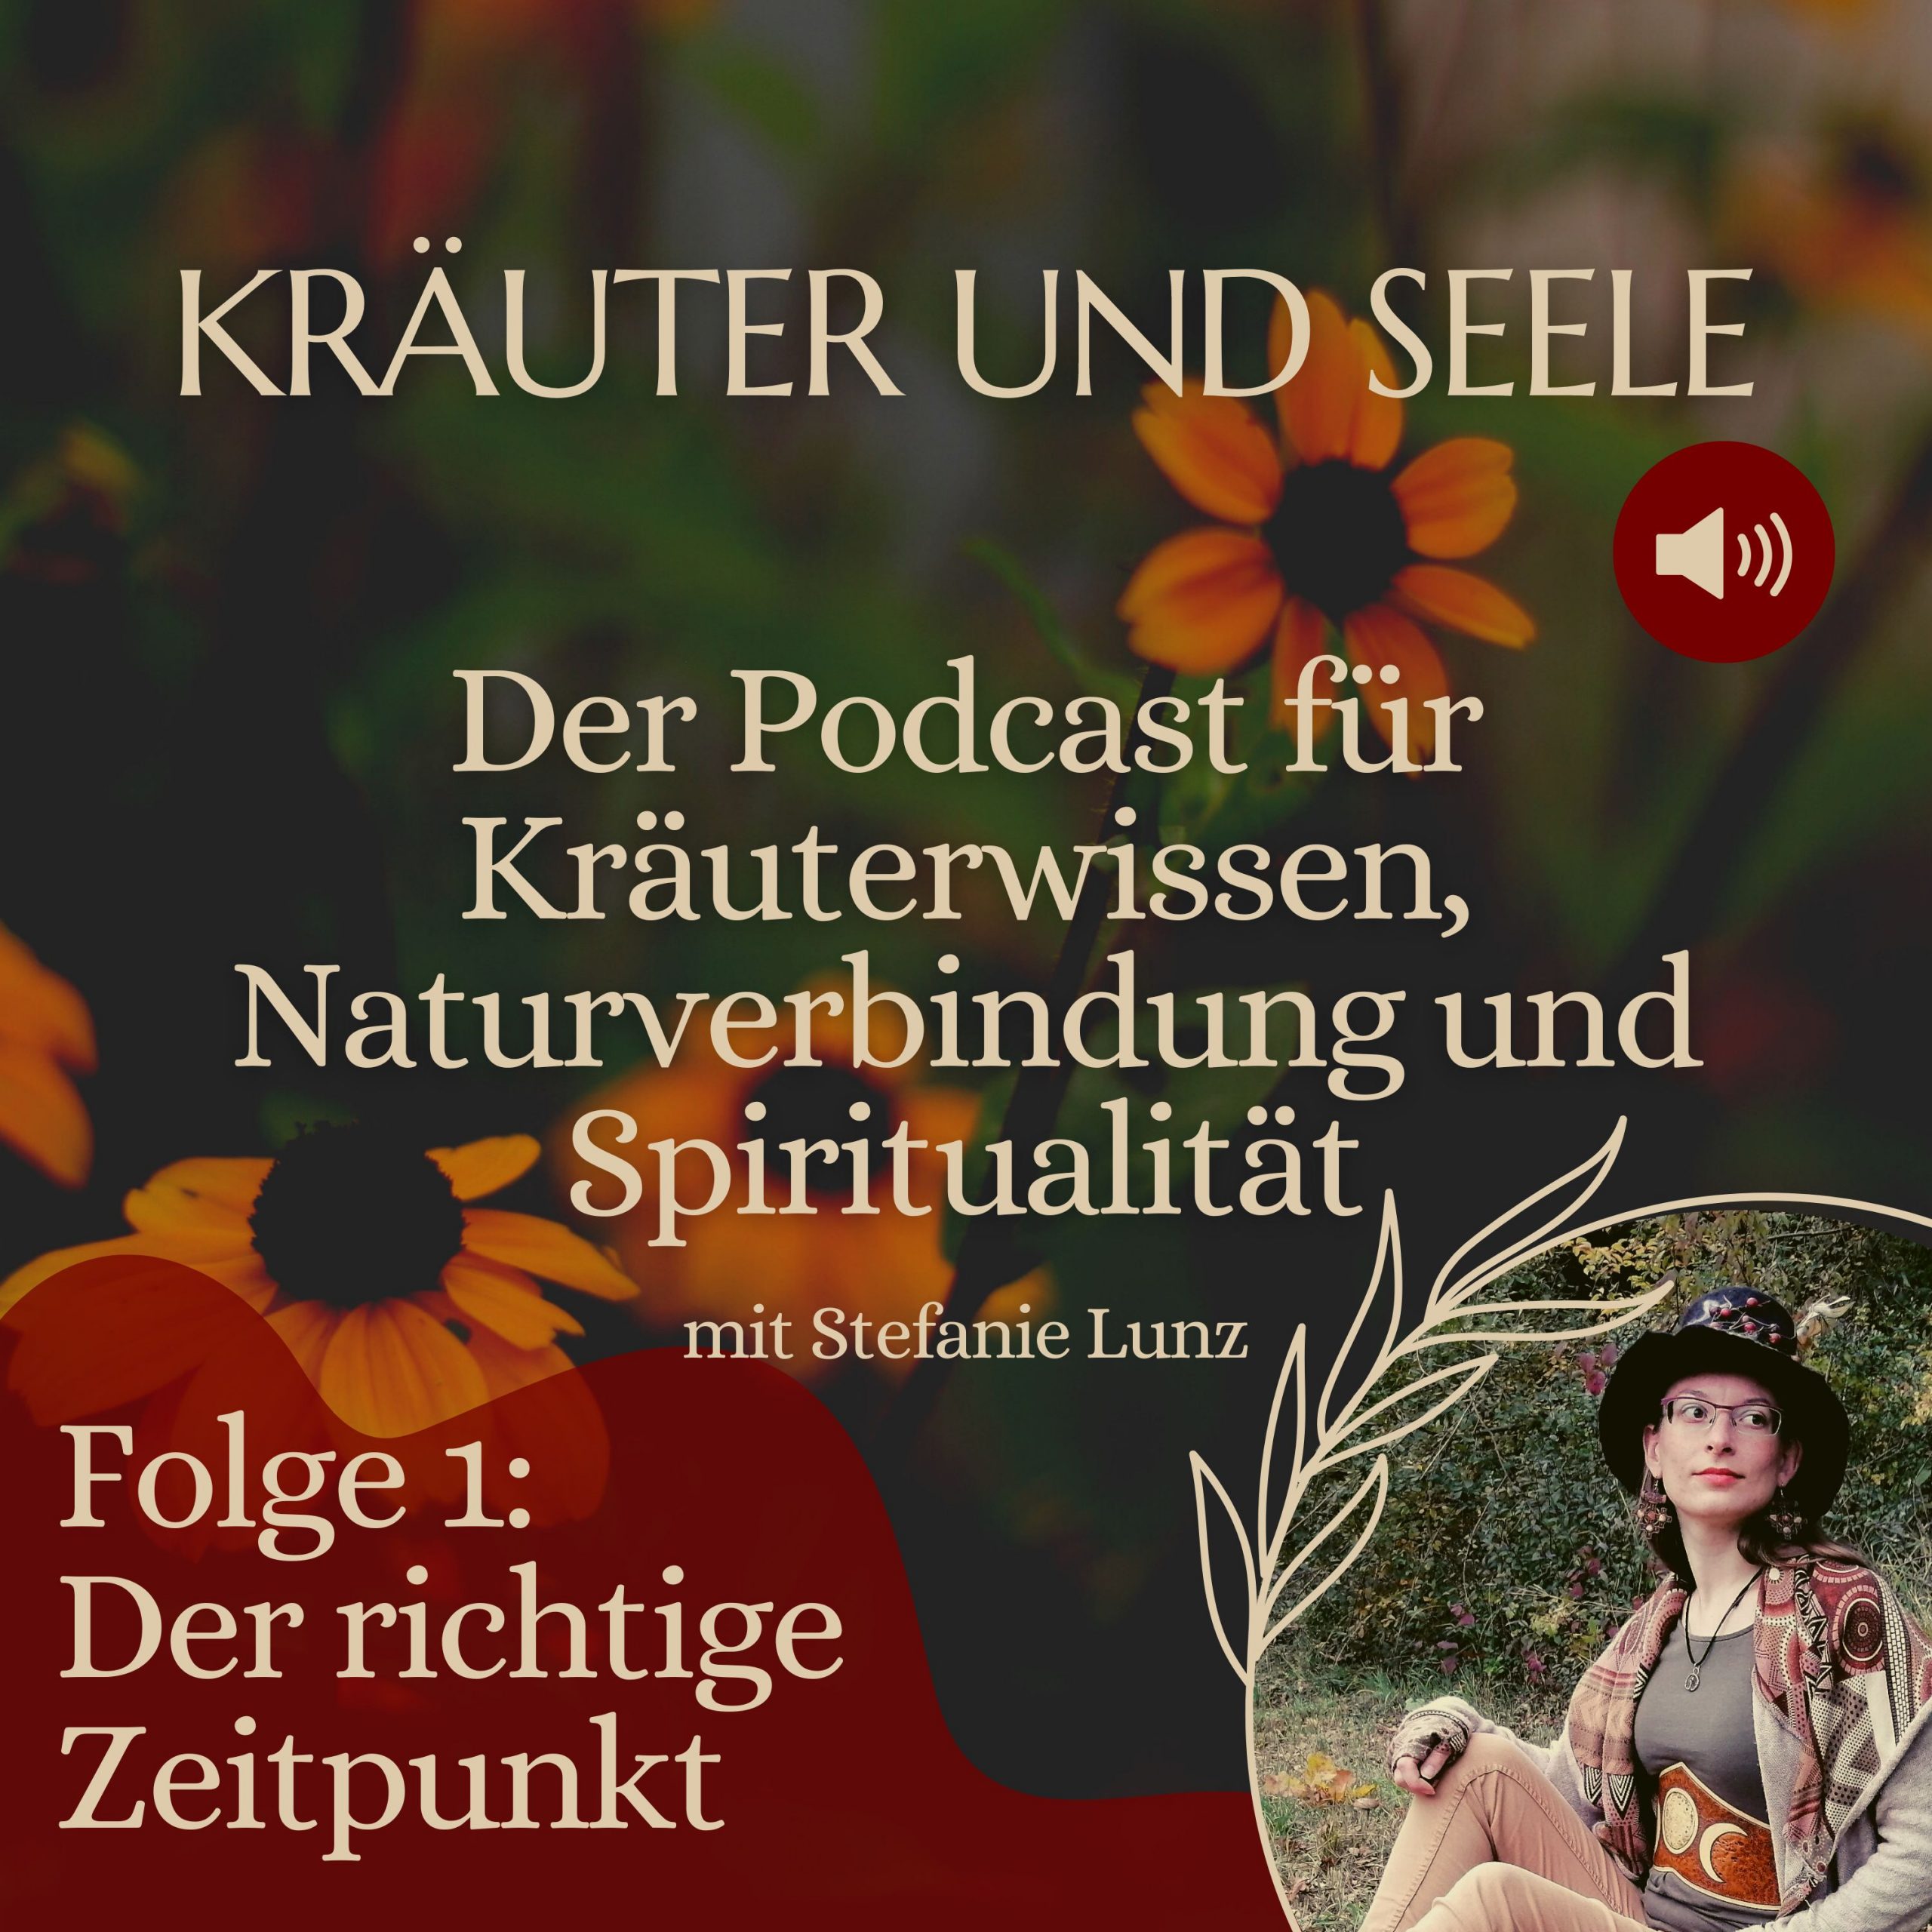 Der Podcast für Kräuterwissen, Naturverbindung und Spiritualität